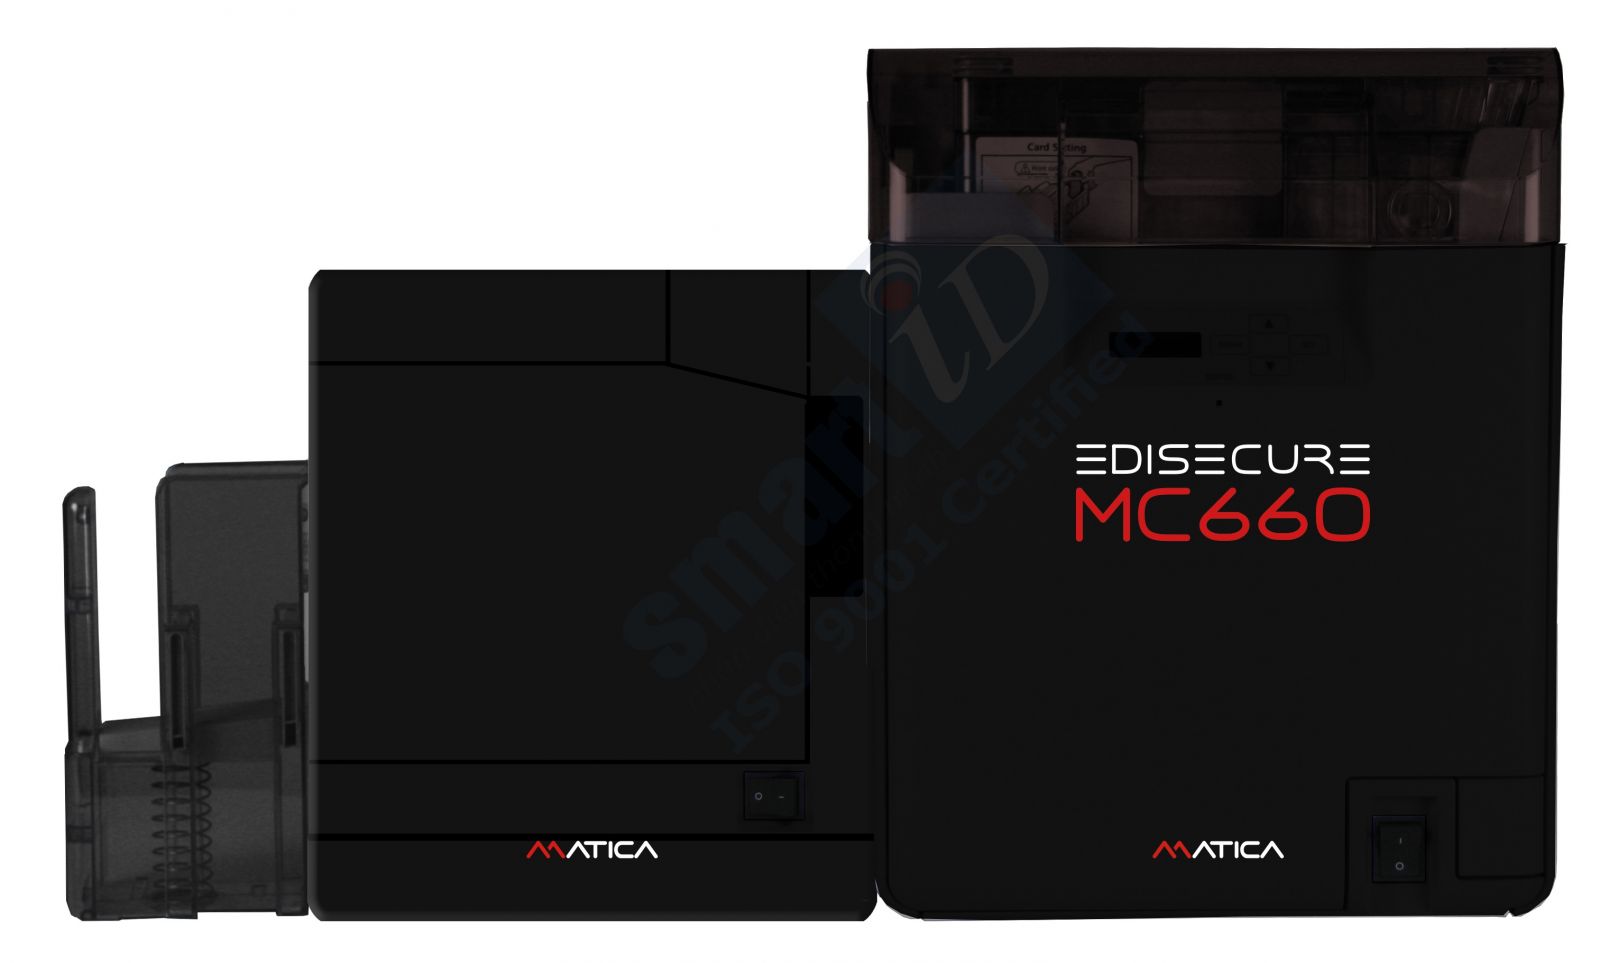 Máy in thẻ nhựa Chuyển tiếp Matica MC660 tích hợp module cán màng